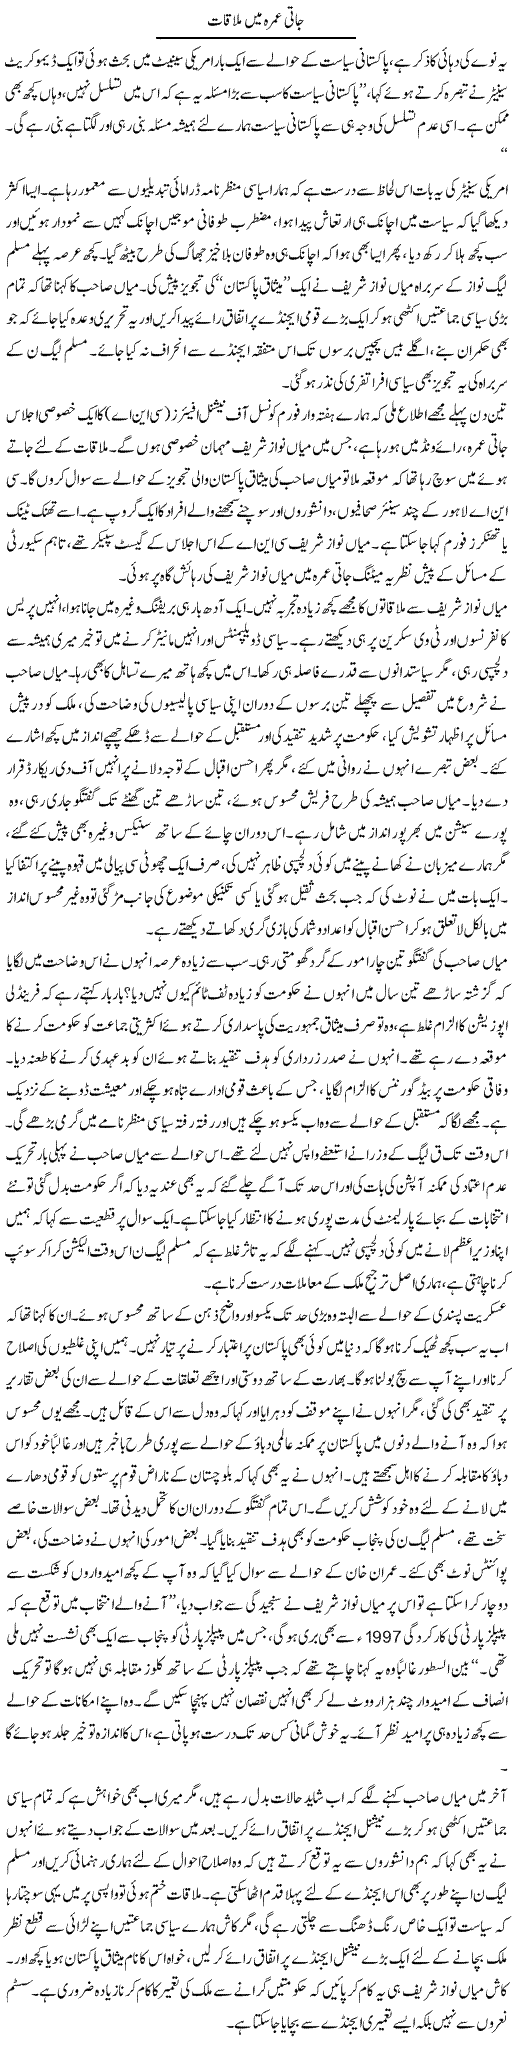 Pakistani Politics Express Column Amir Khakwani 9 October 2011